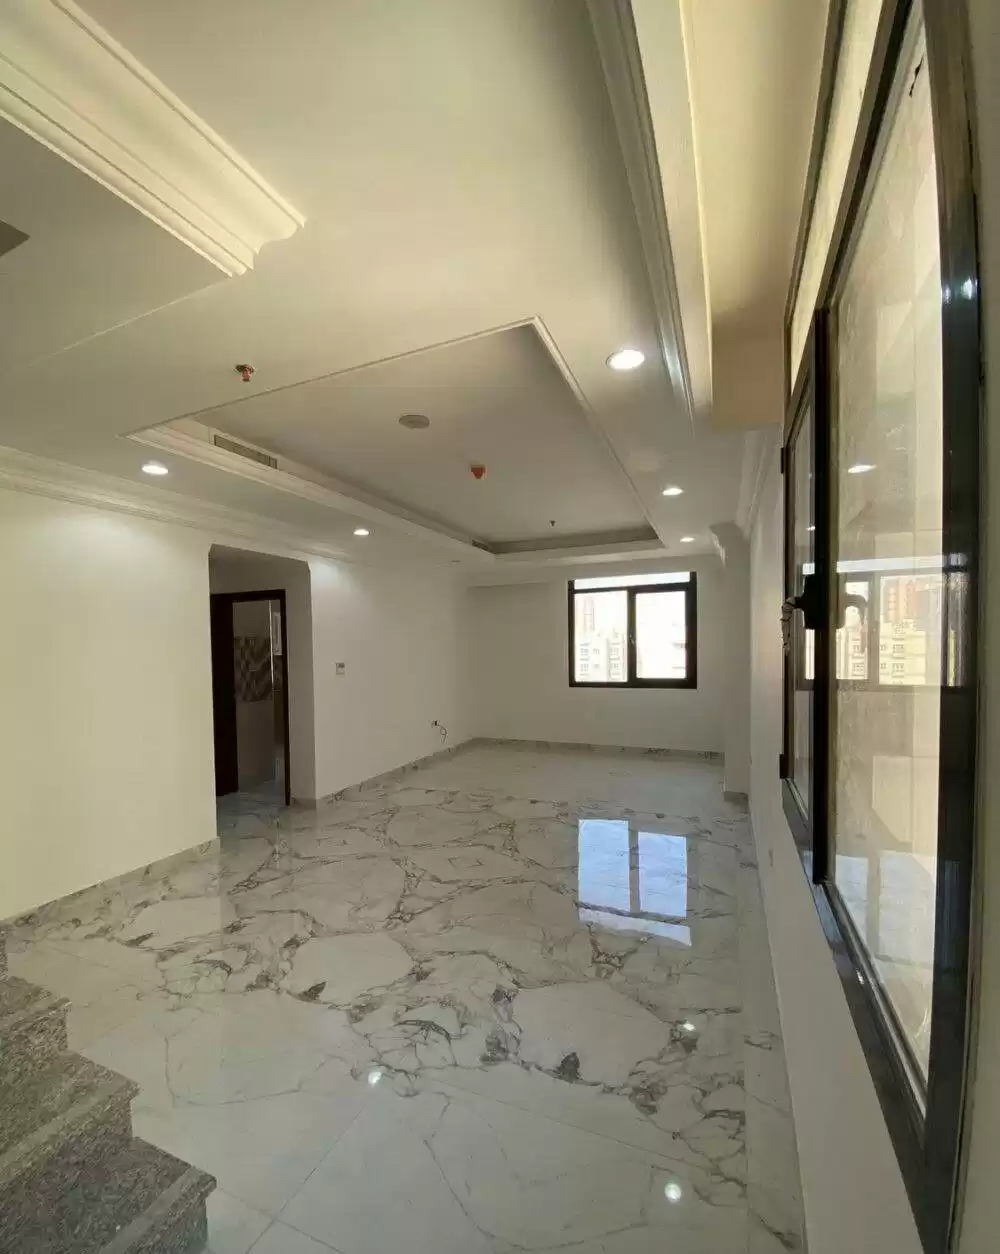 Résidentiel Propriété prête 3 chambres U / f Appartement  a louer au Koweit #23061 - 1  image 